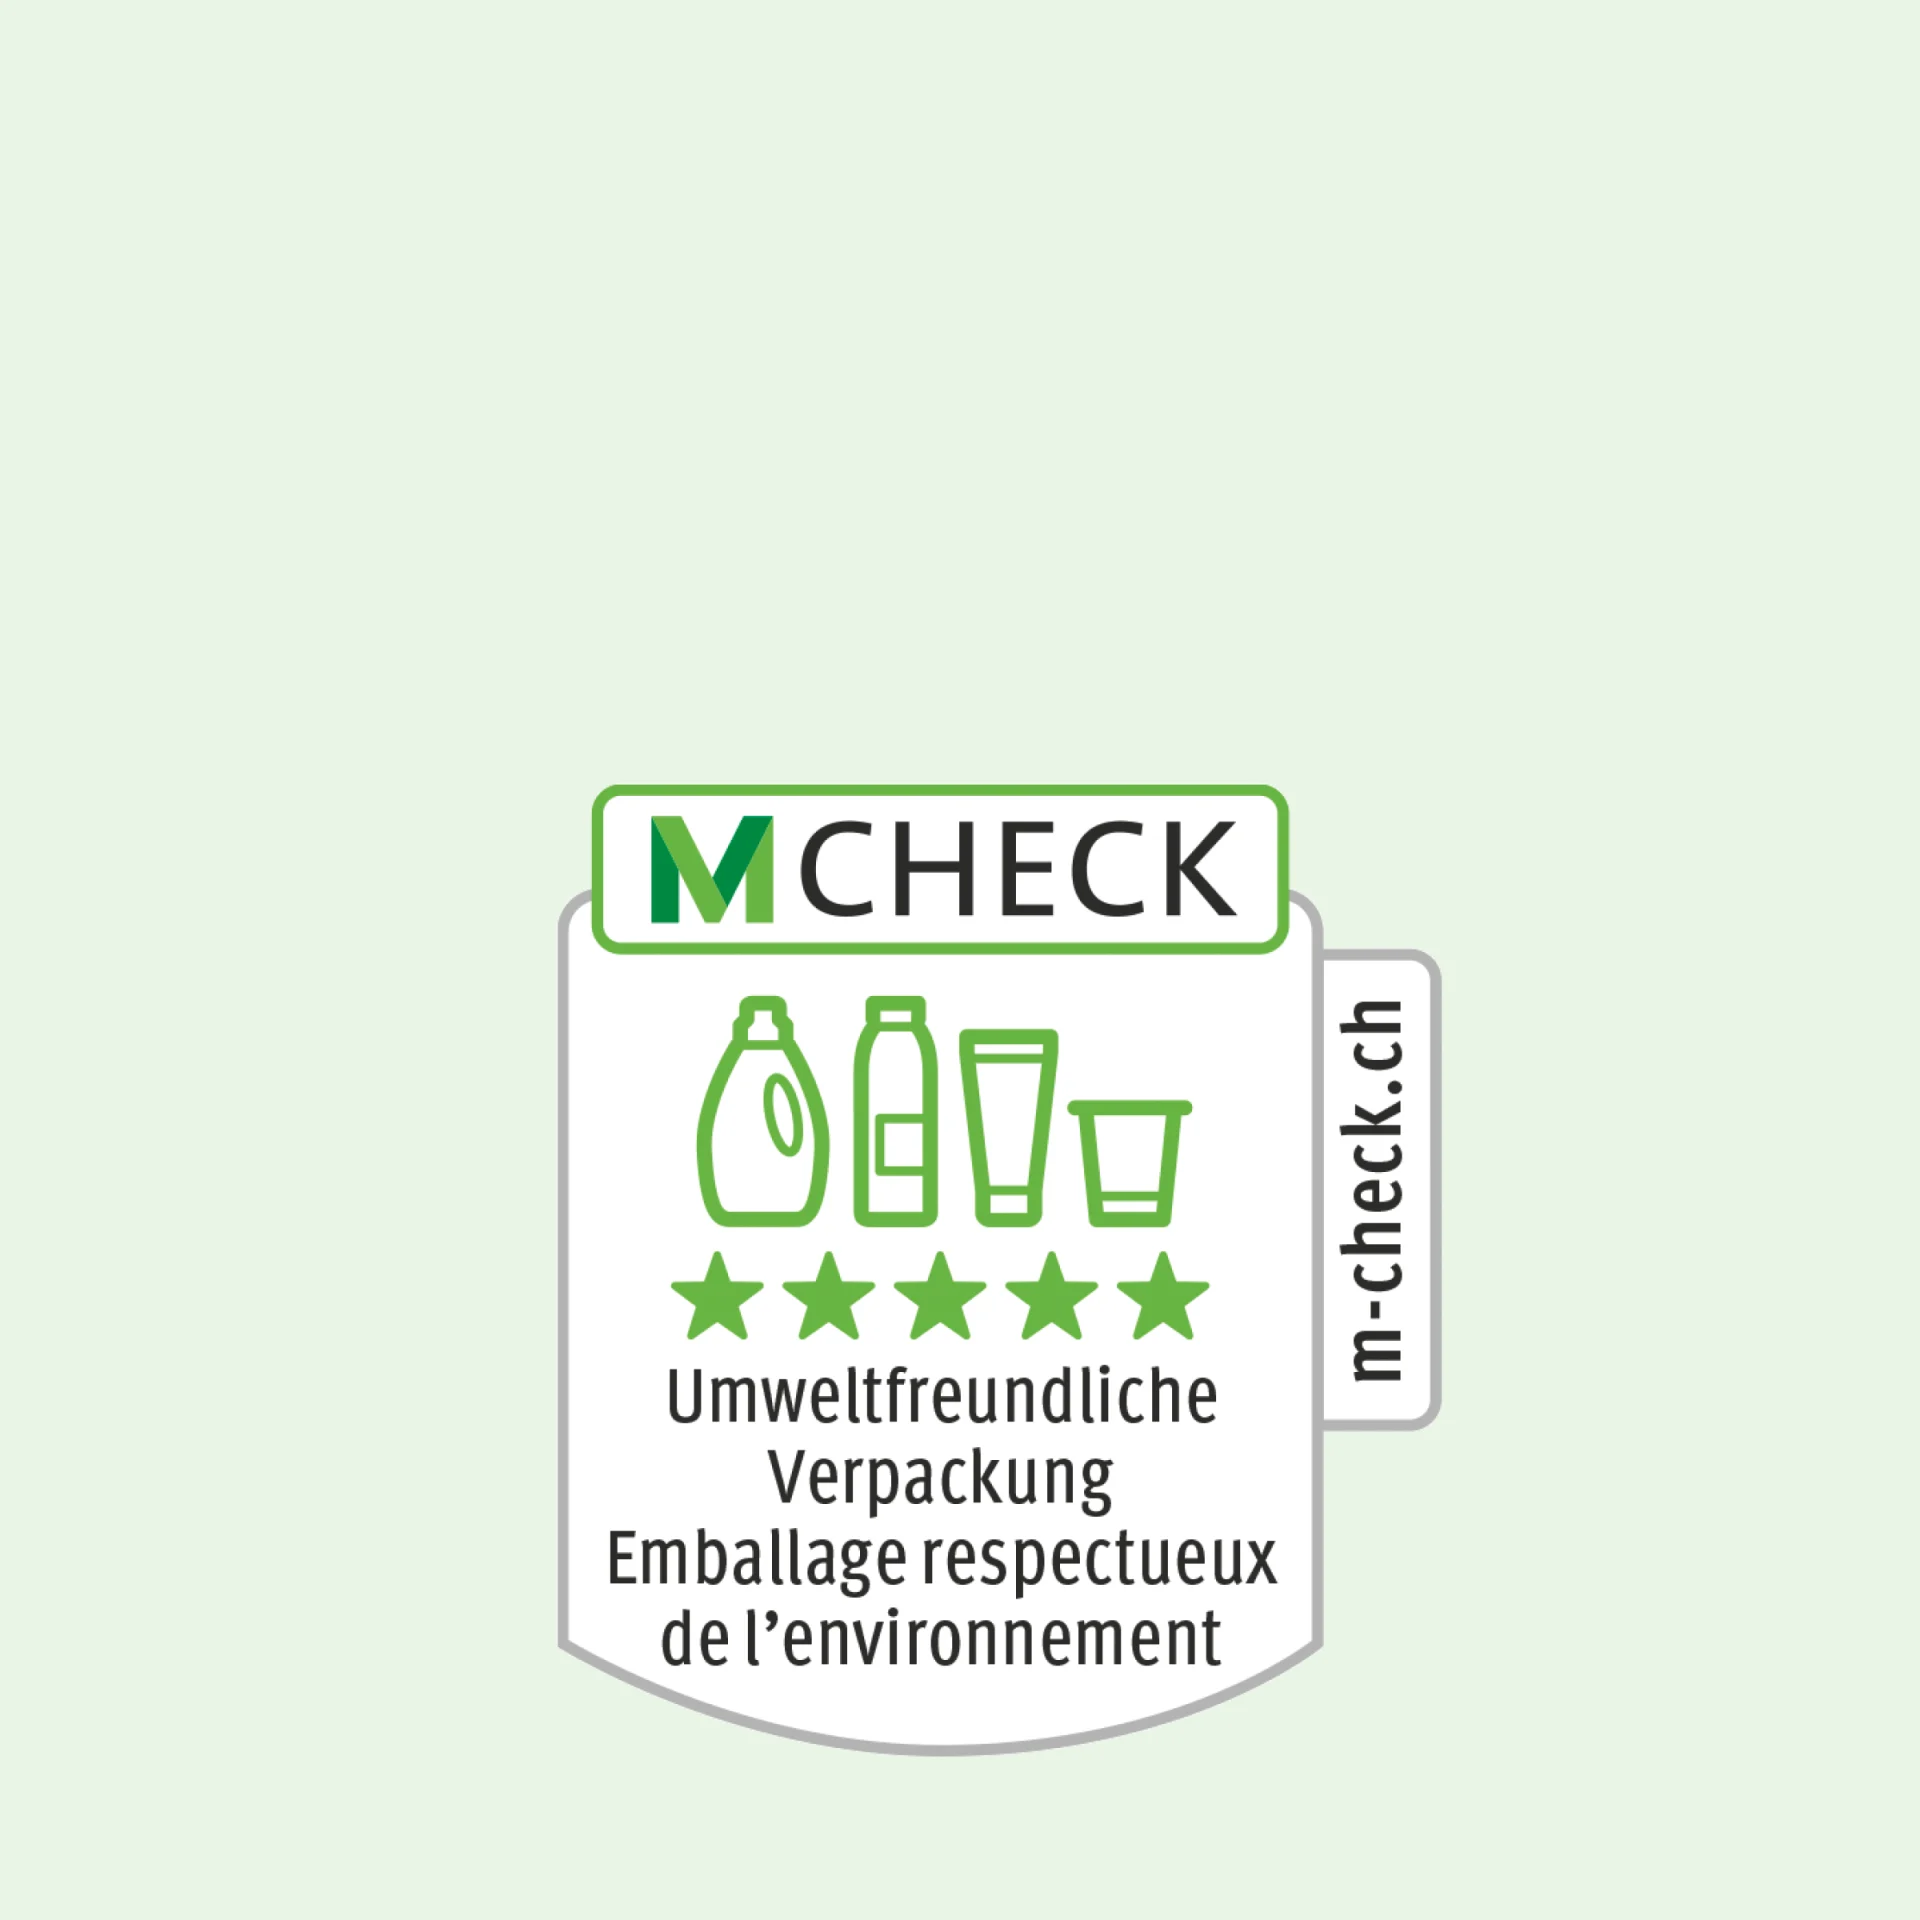 Icône M-Check avec des emballages, et cinq étoiles pour des emballages respectueux de l’environnement